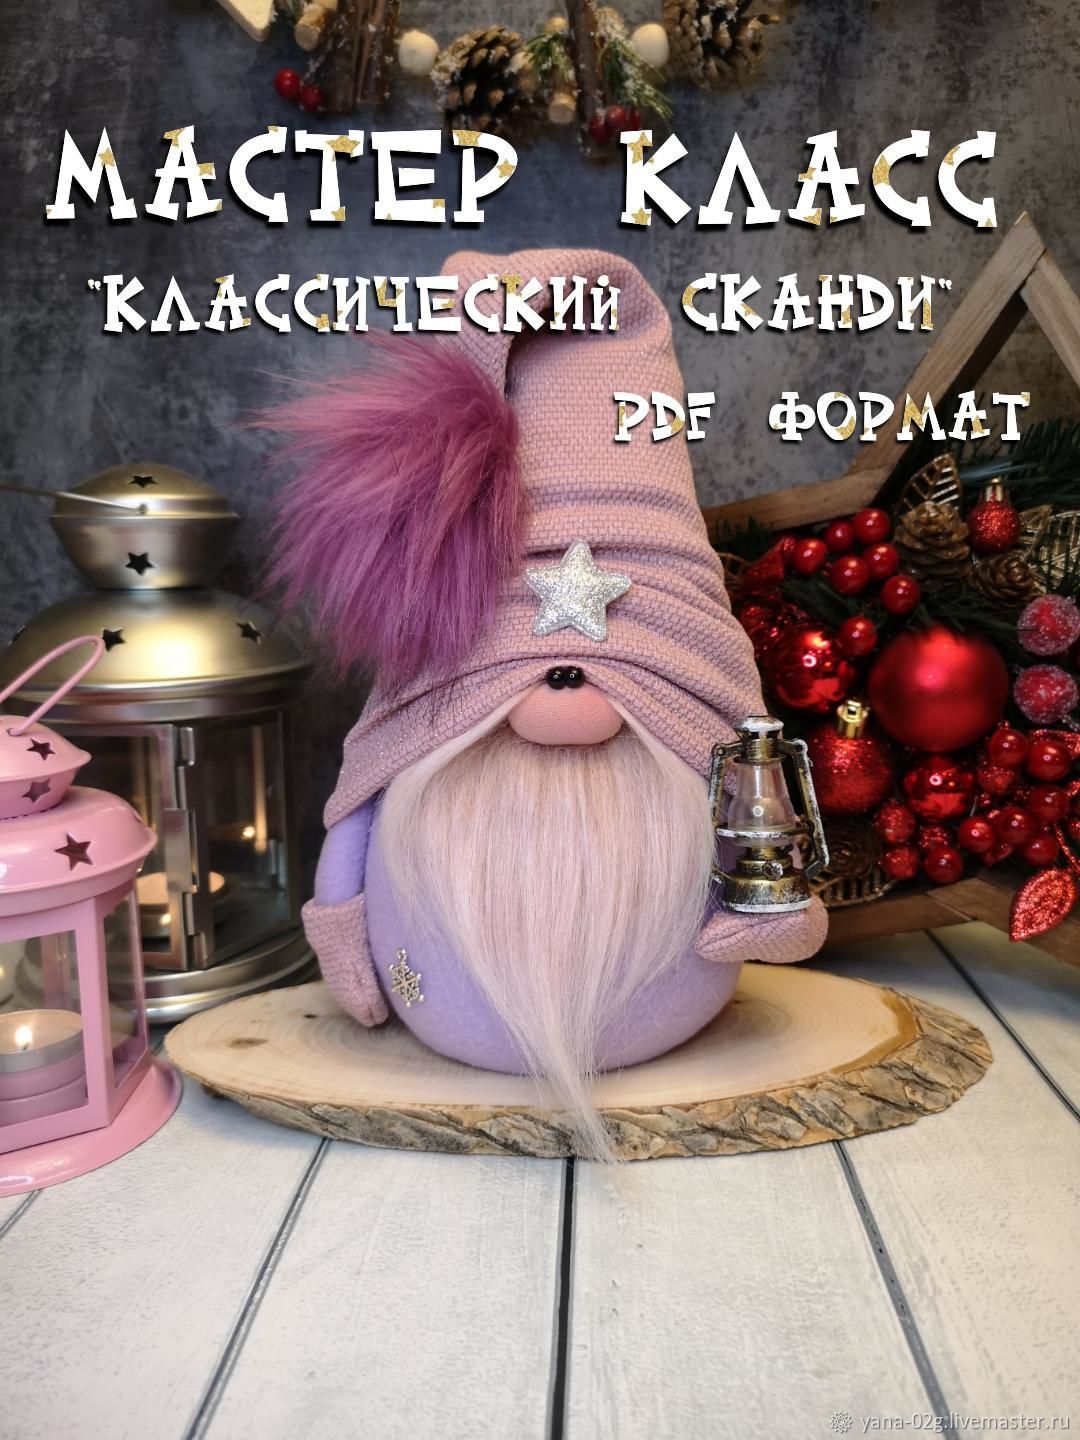 DIY Gnome\ Scandinavian Gnome\Скандинавский Гном - своими руками\Как сшить гнома\Мастер класс